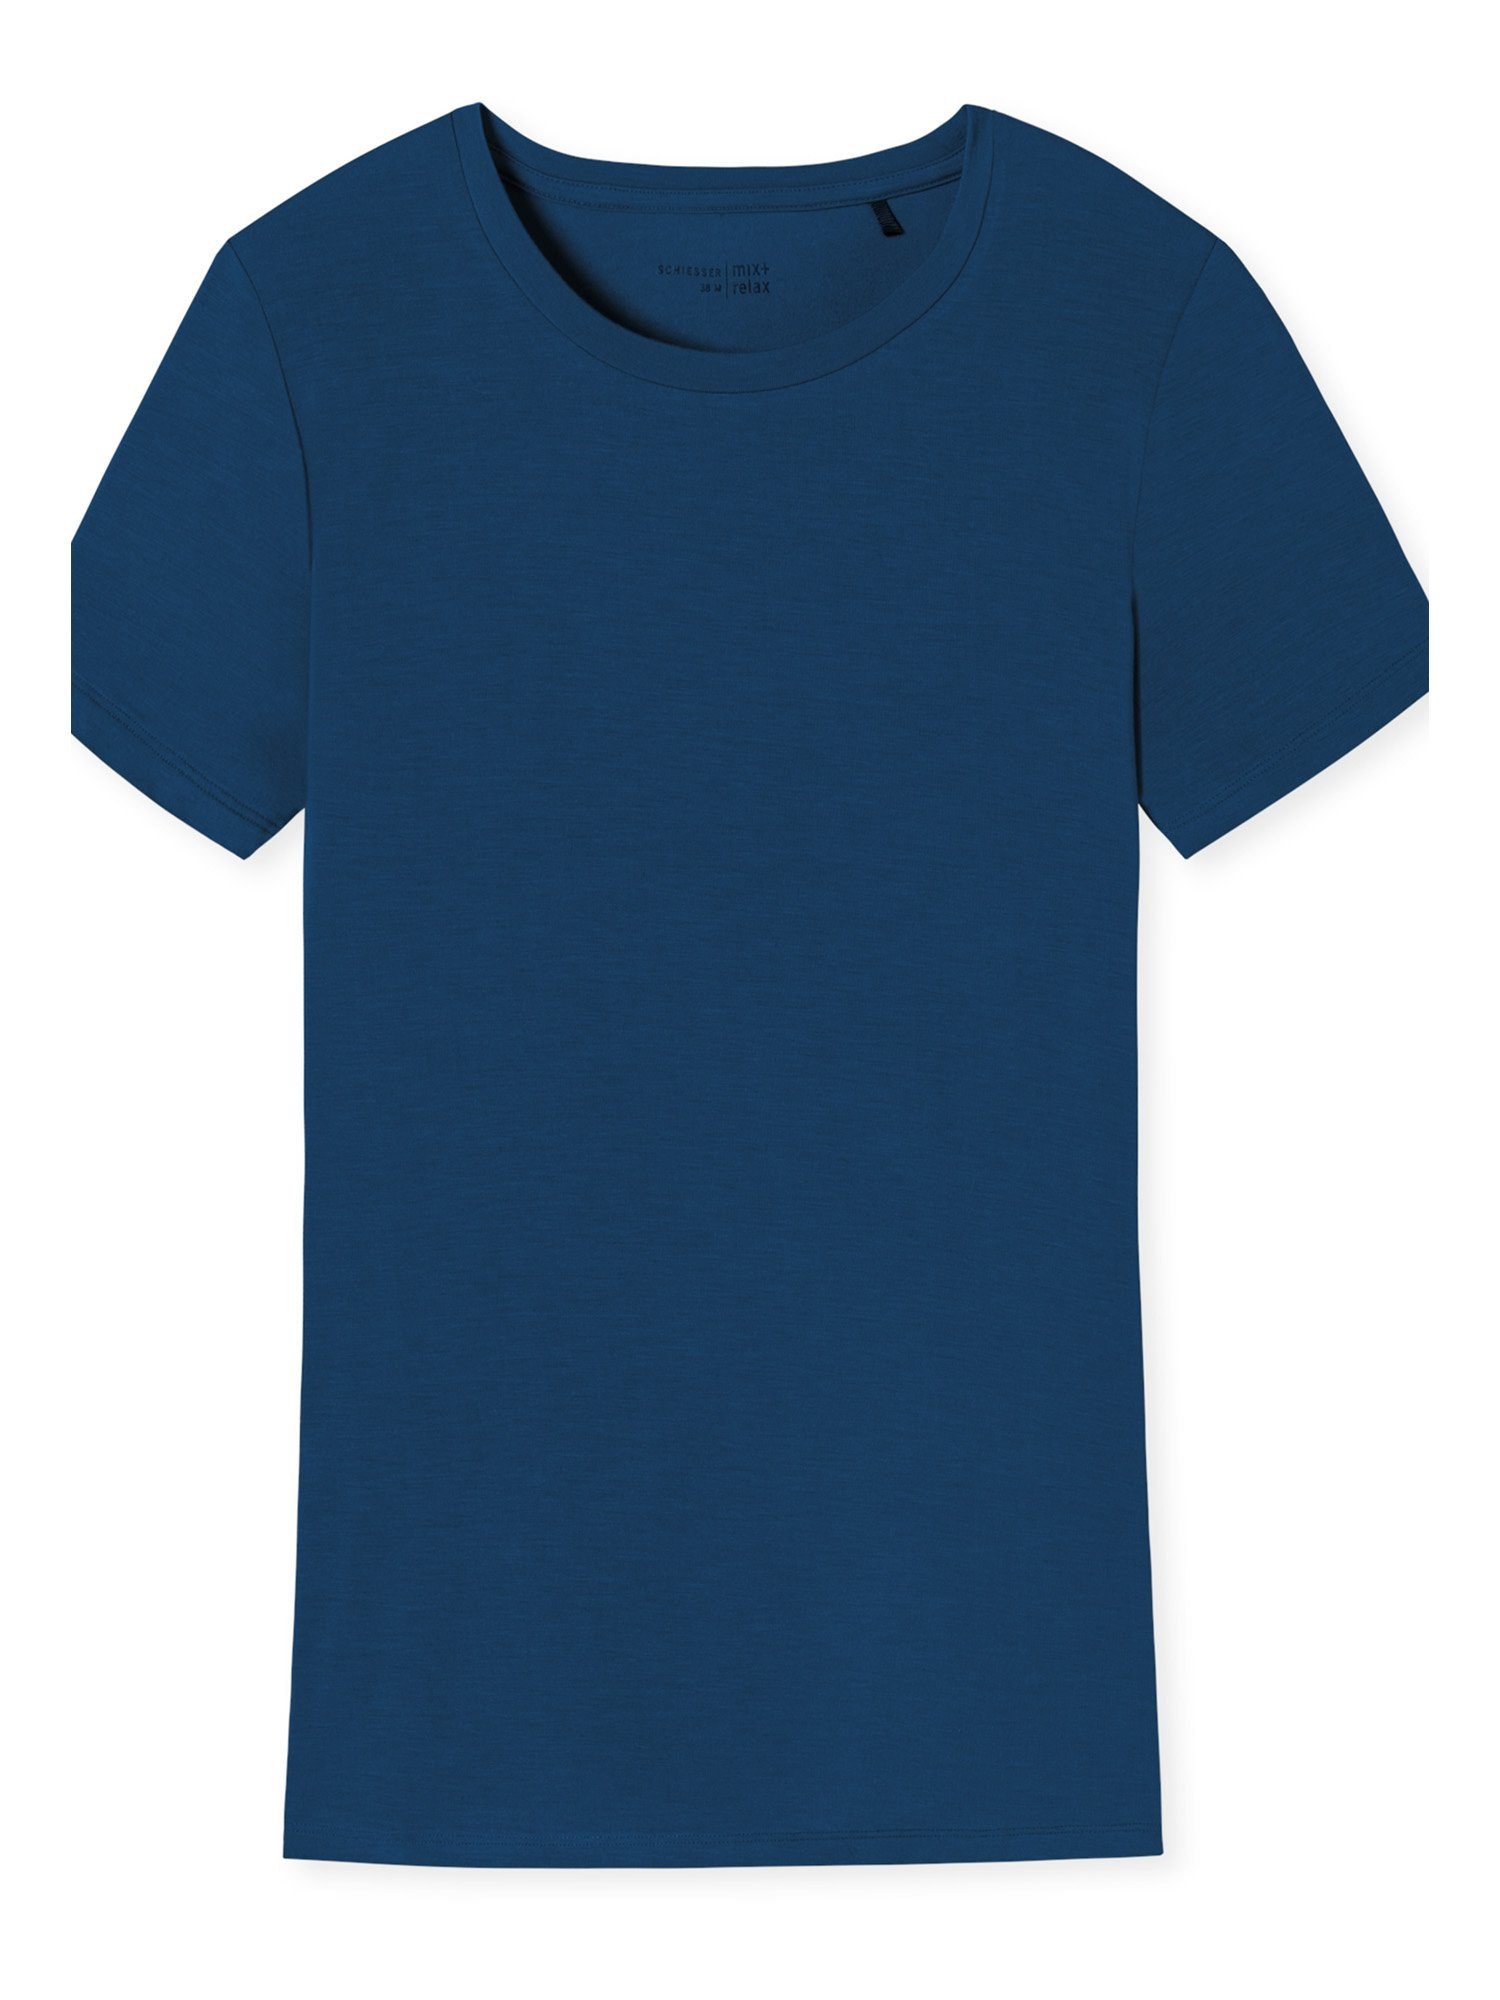 T-Shirt Schiesser unterhemd T-Shirt Mix navy unterziehshirt Relax